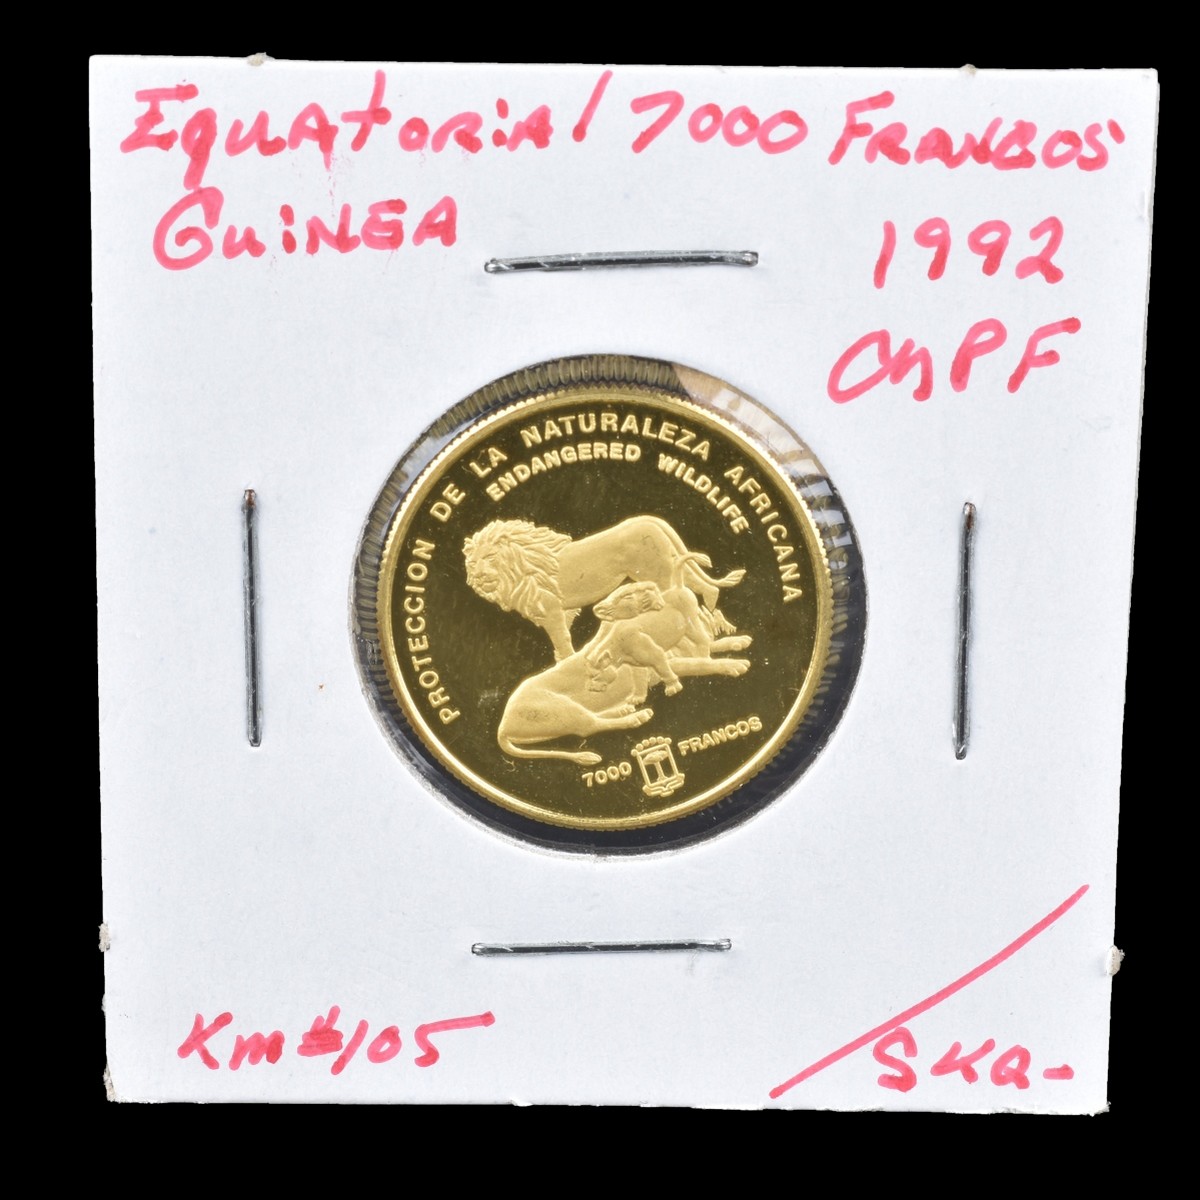 1992 Equatorial Guinea Gold 7000 Francos